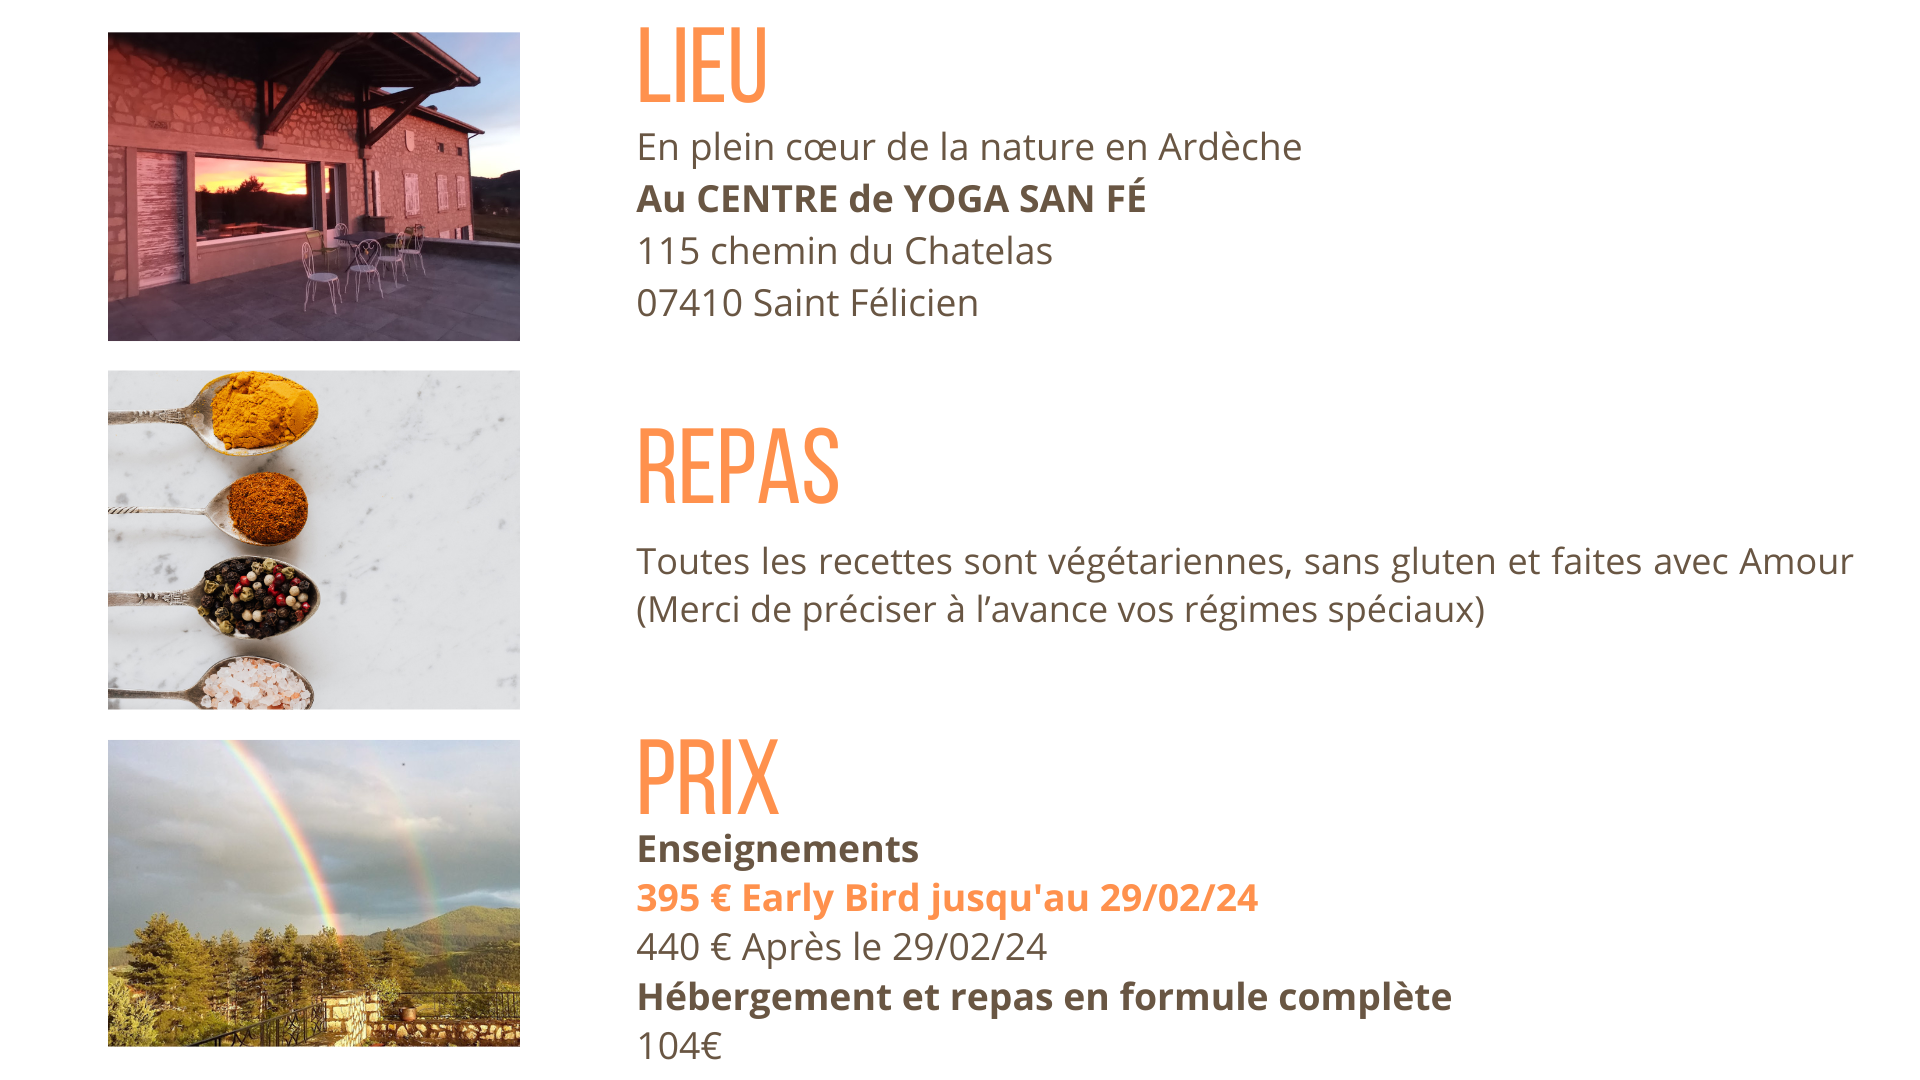 Information sur le lieu, le prix et les repas pour notre formation au gong du 19 au 21 avril 2024 en Ardèche